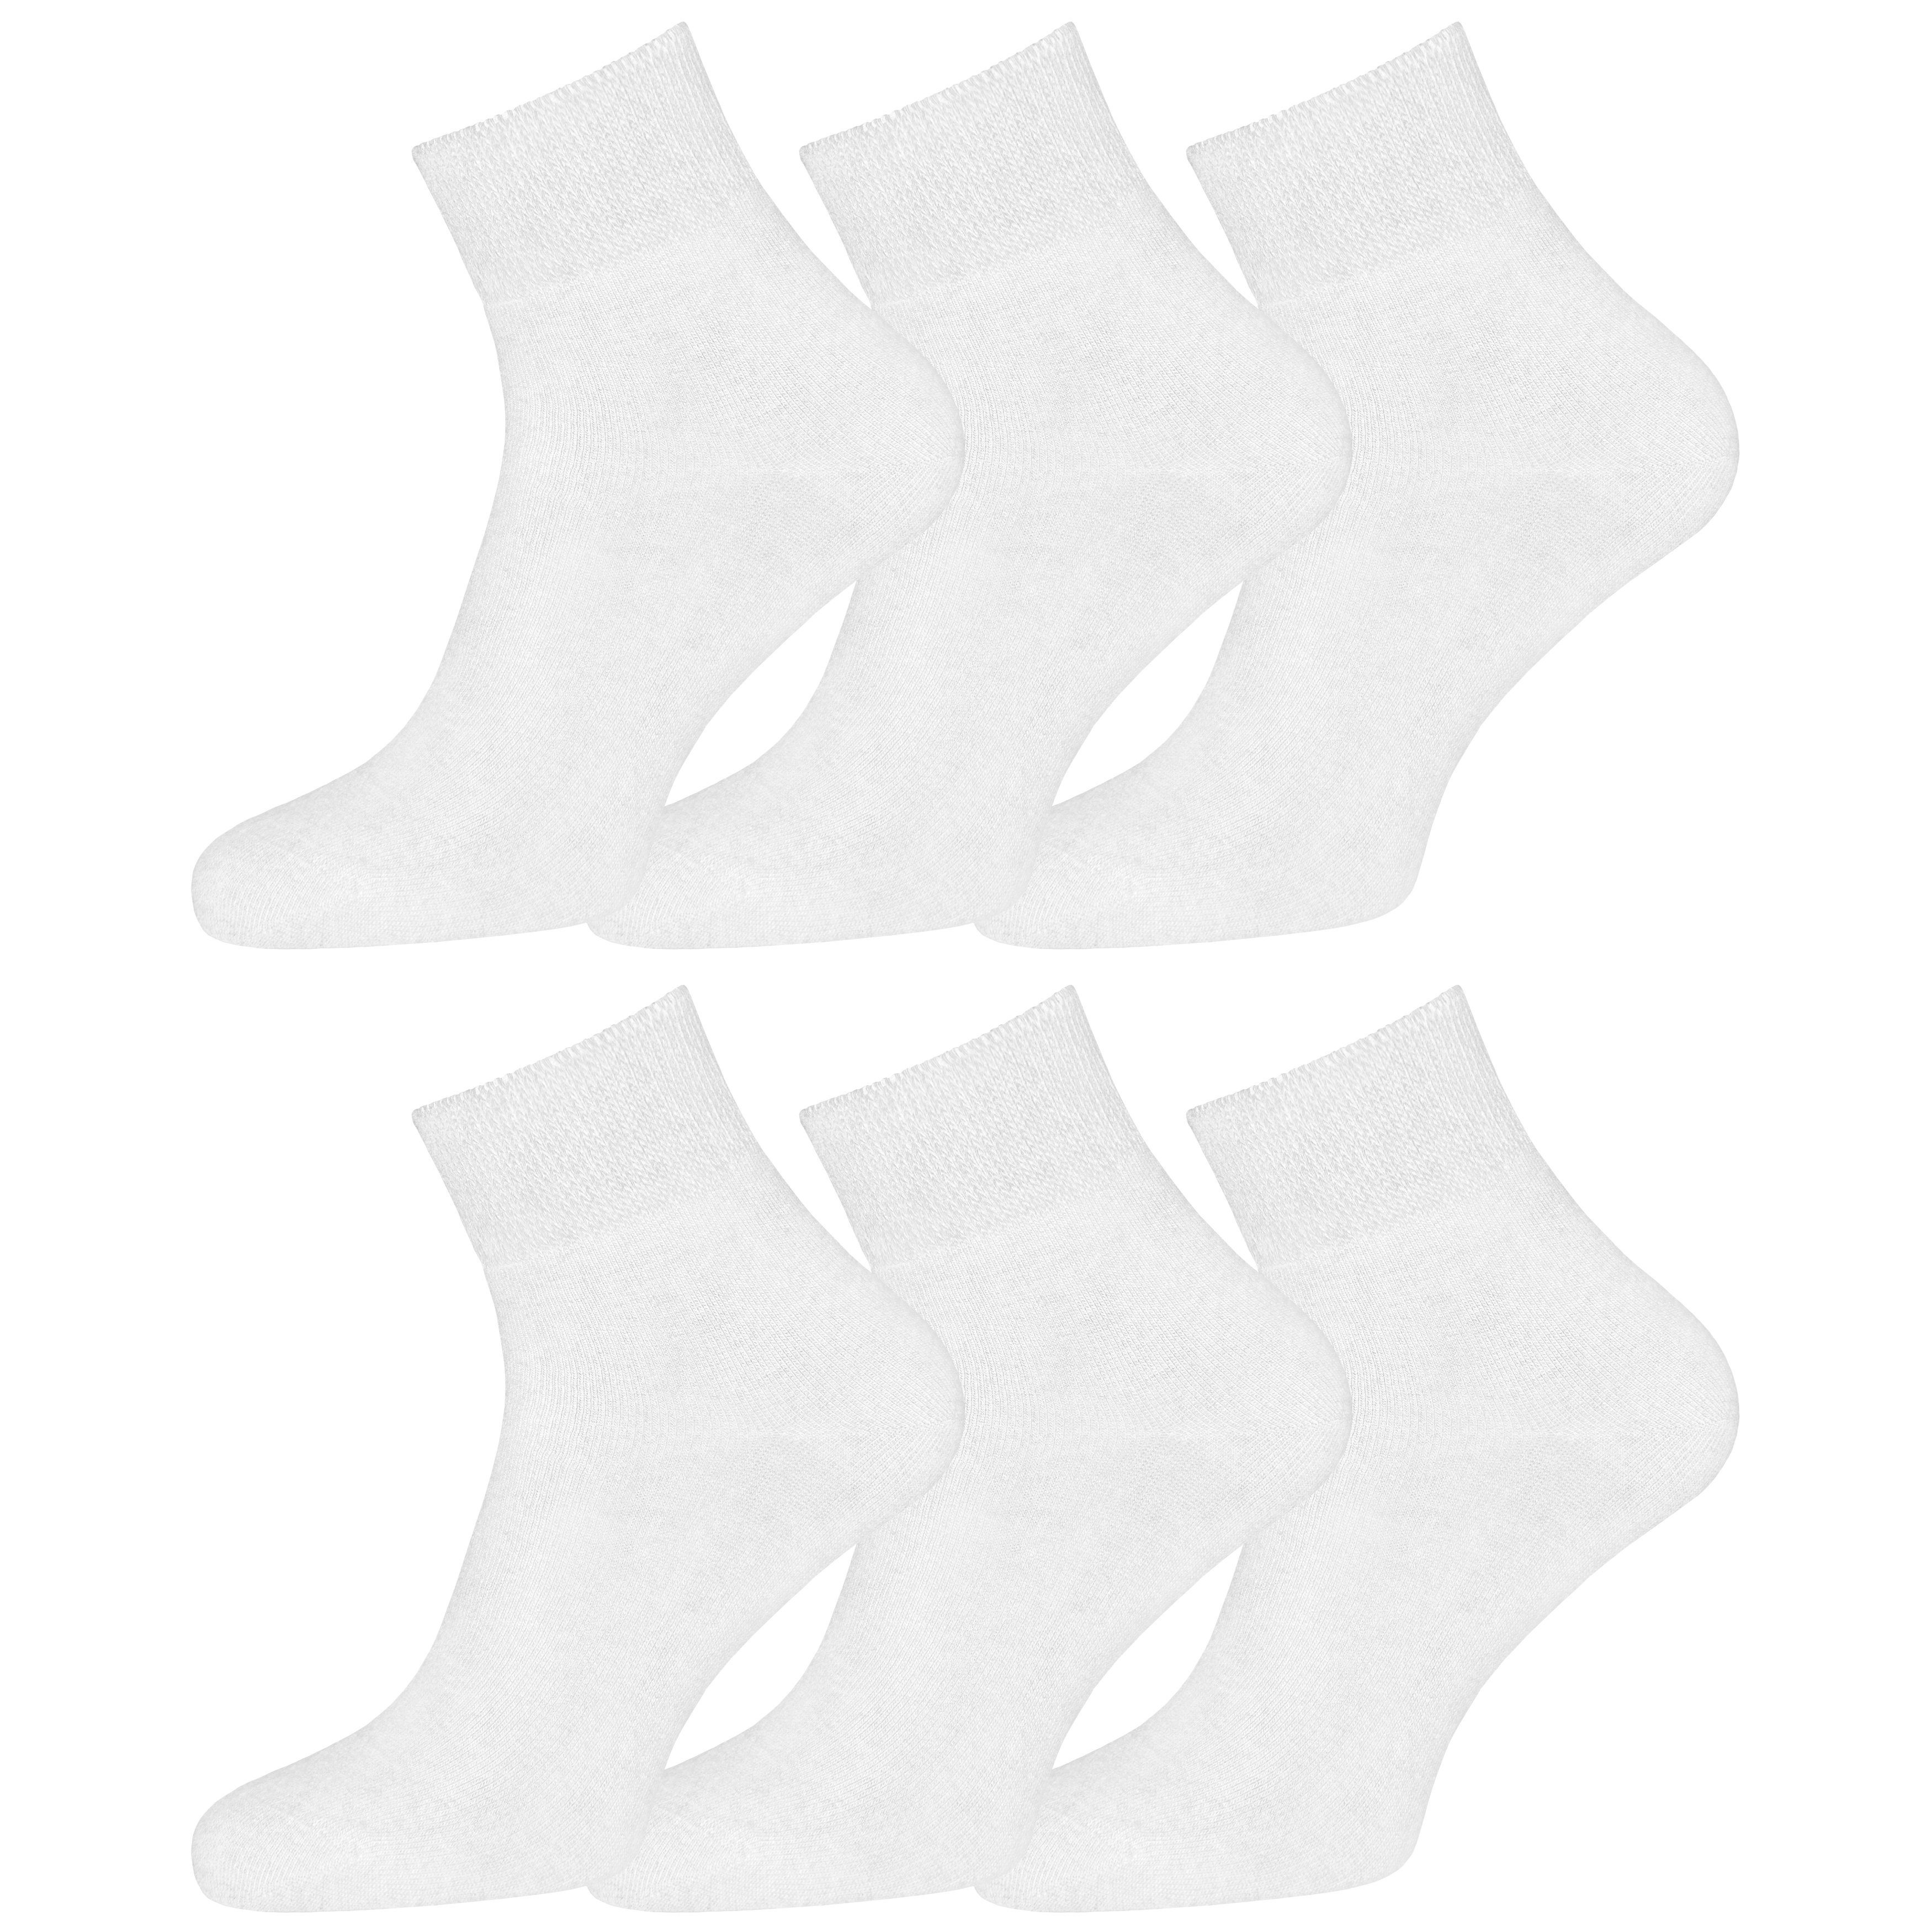 OCERA Diabetikersocken 6x Socken Kurzschaft Unisex für Diabetiker geeignet und ohne Gummibund weiss